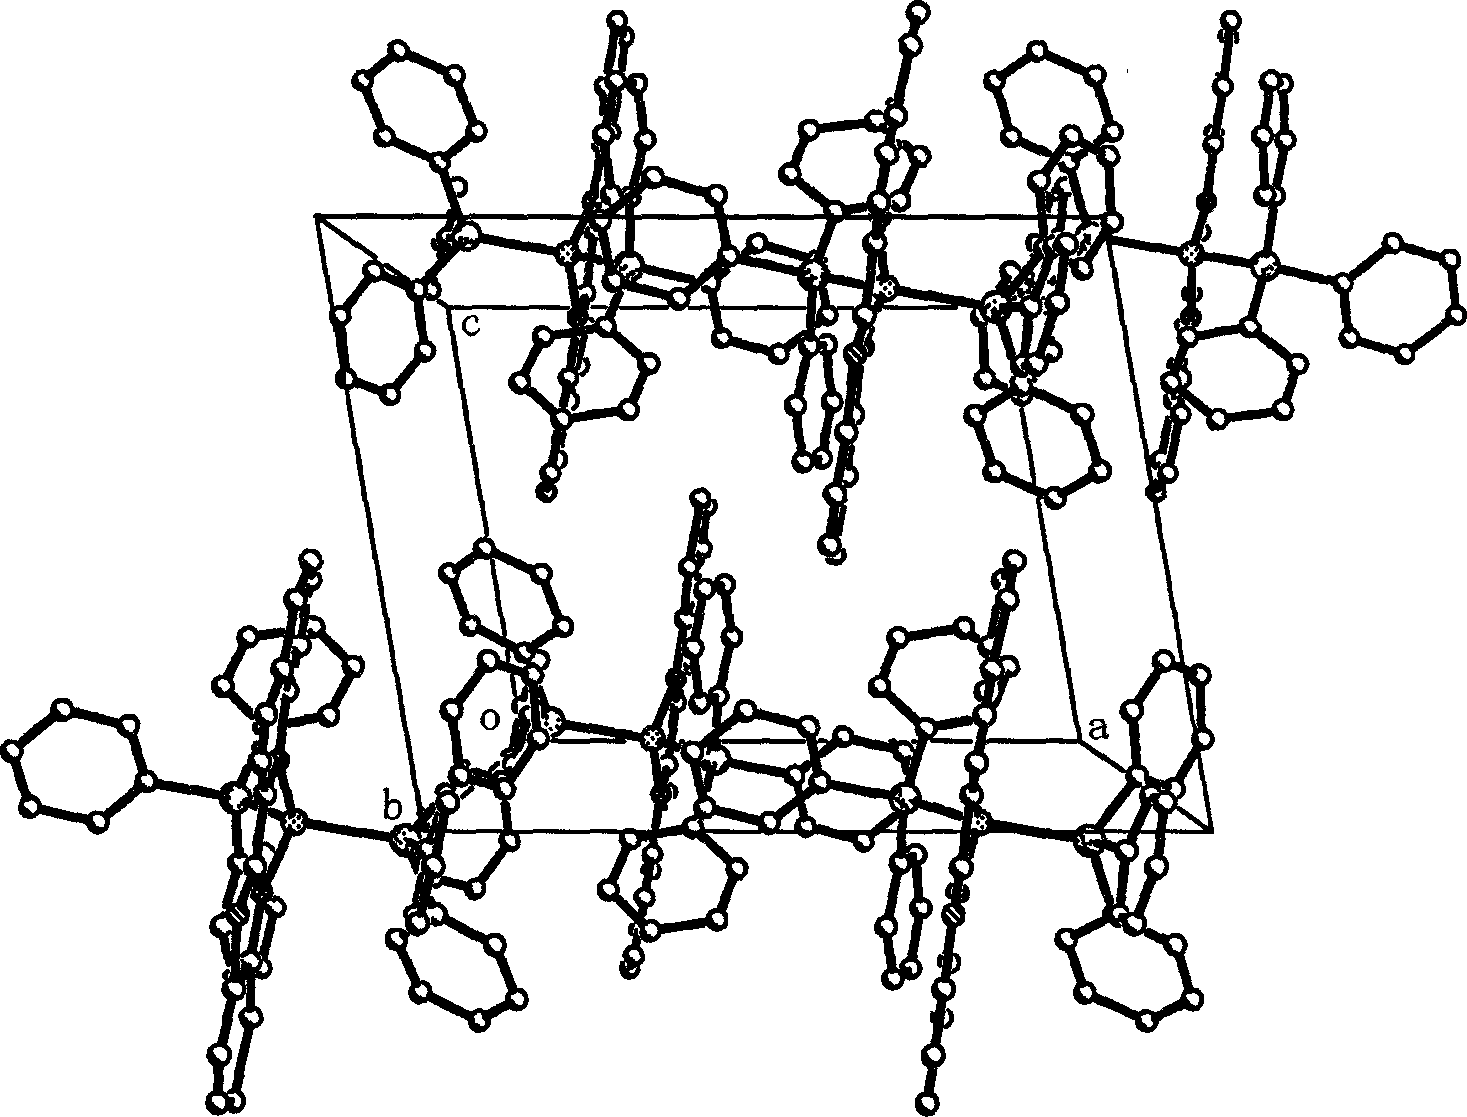 Benzoxazolylquinoline ligand-based cuprous complex luminescent material